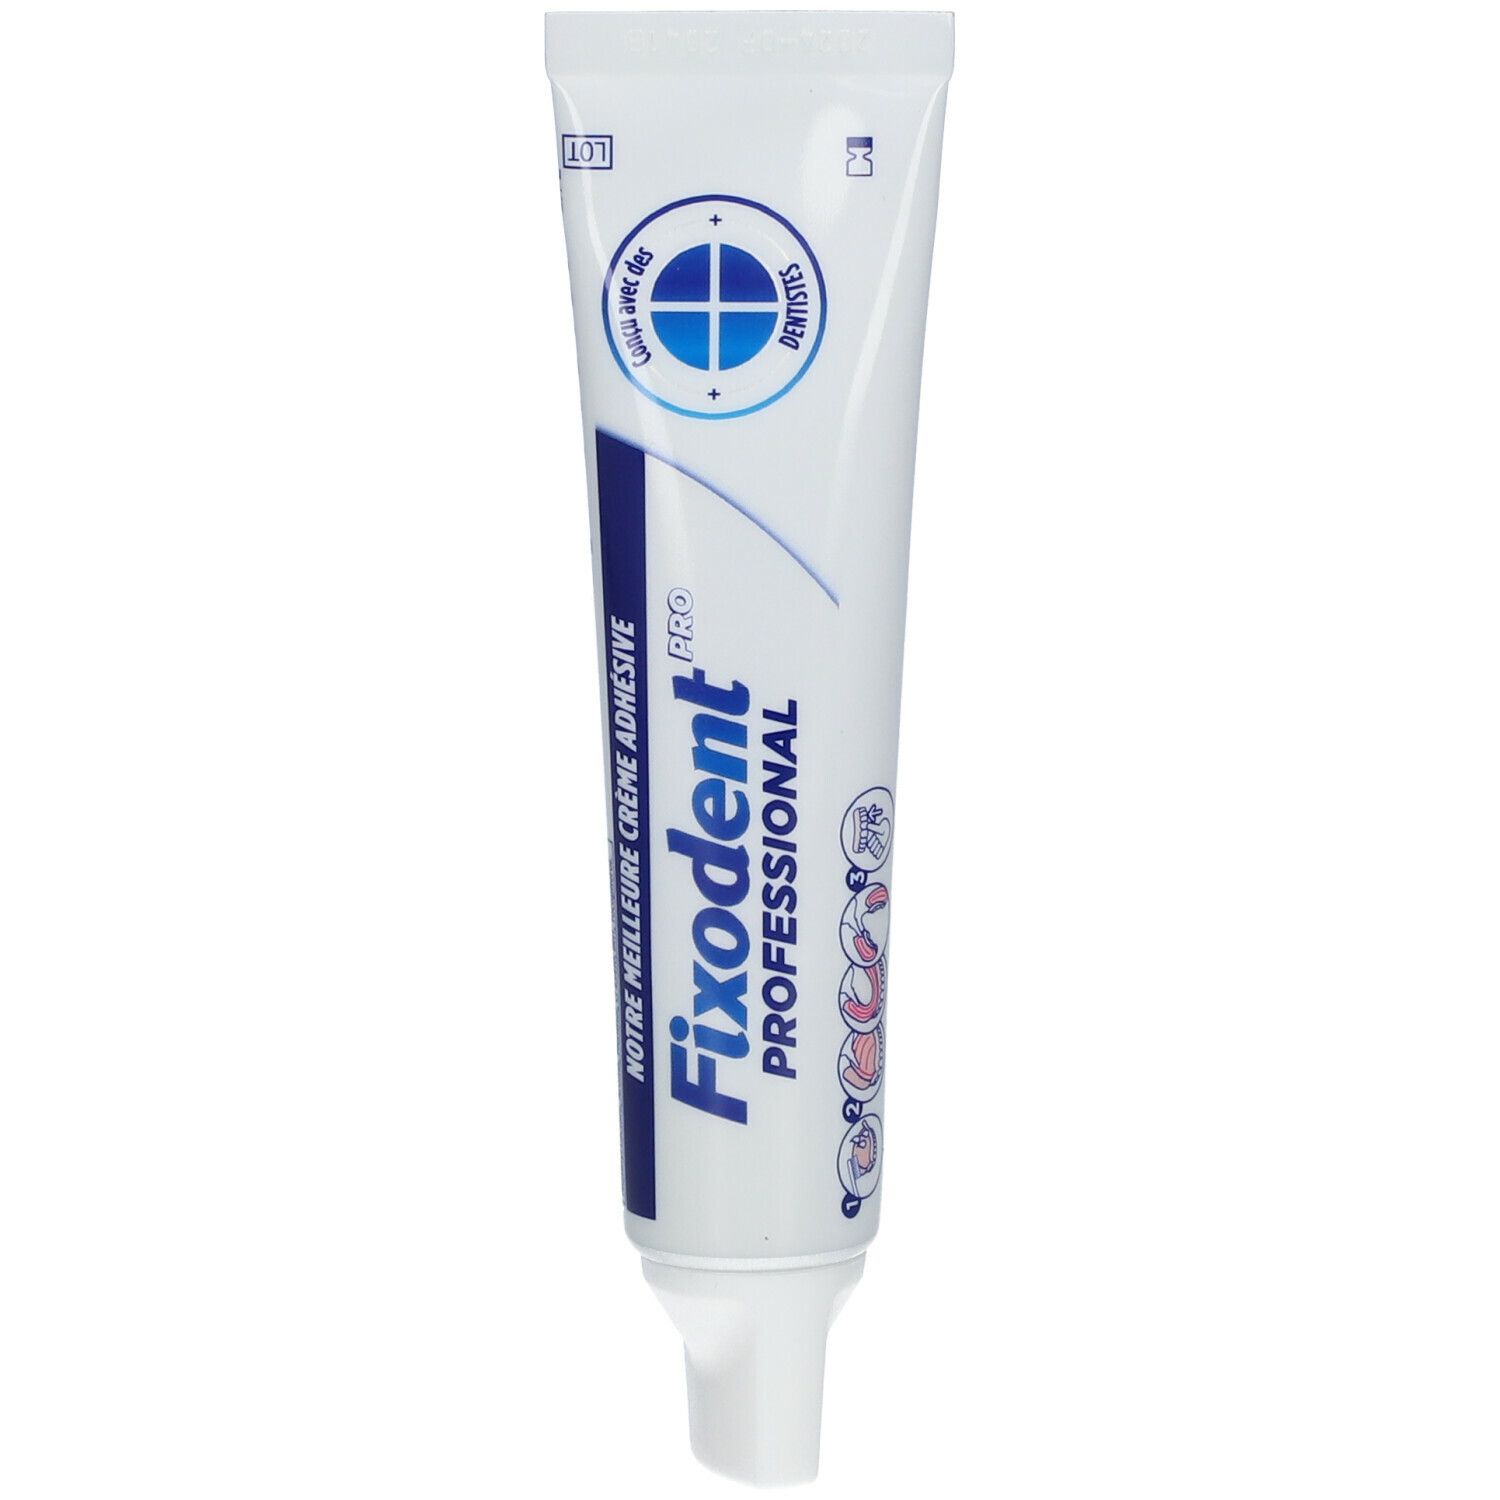 Fixodent Pro Professional Crème adhésive Premium pour prothèse dentaire